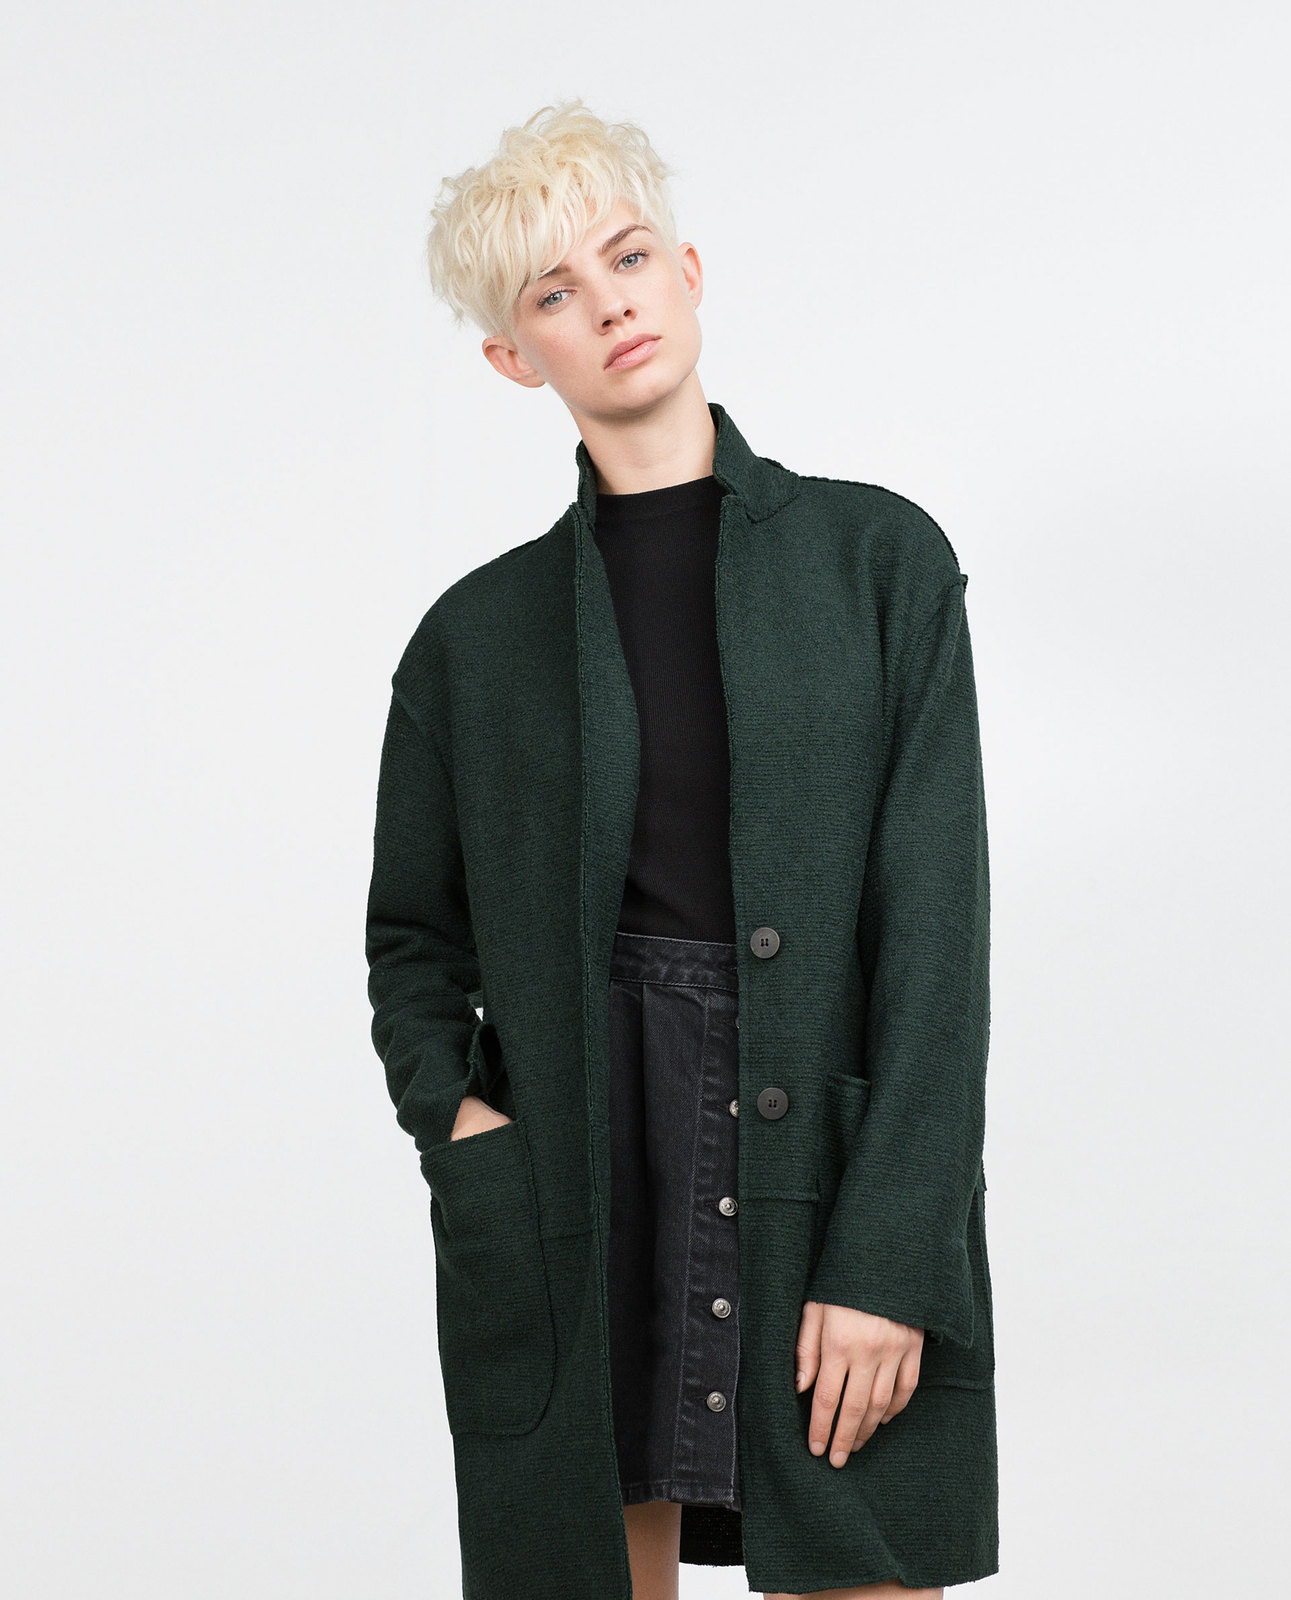 Zara zöld női gyapjú kabát 2015 fotója